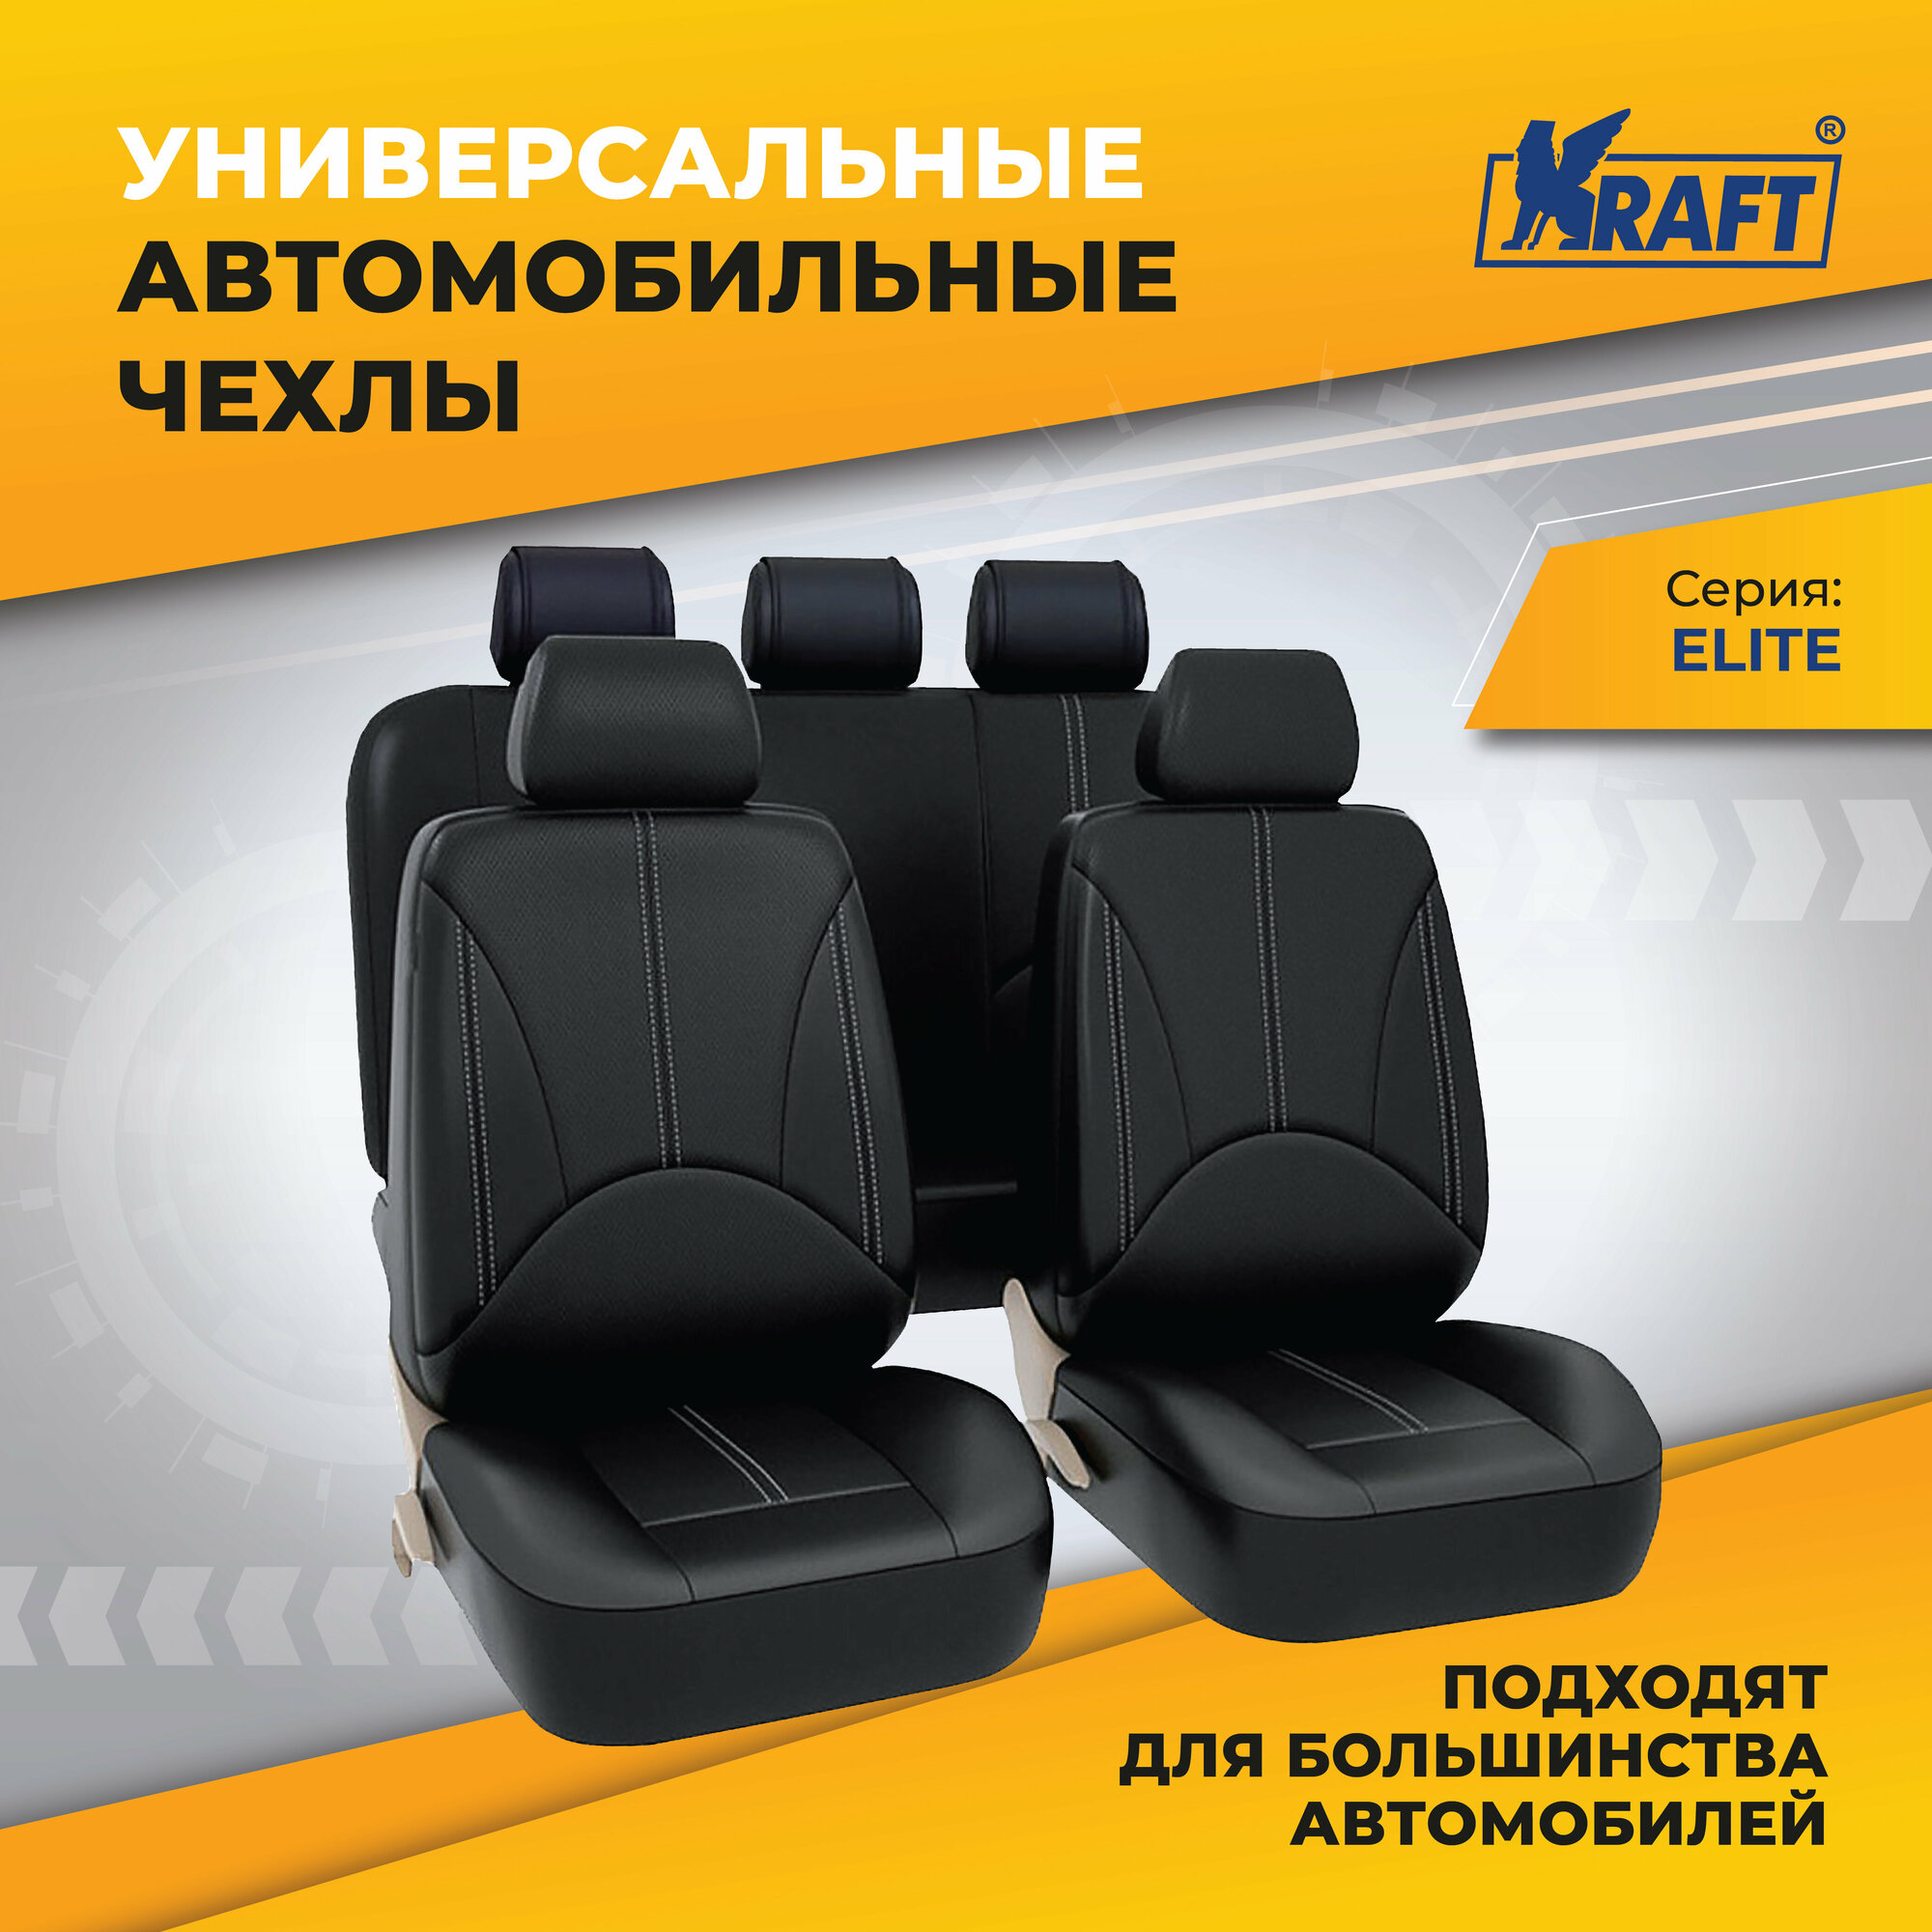 Чехлы универсальные на автомобильные сиденья комплект "ELITE" экокожа